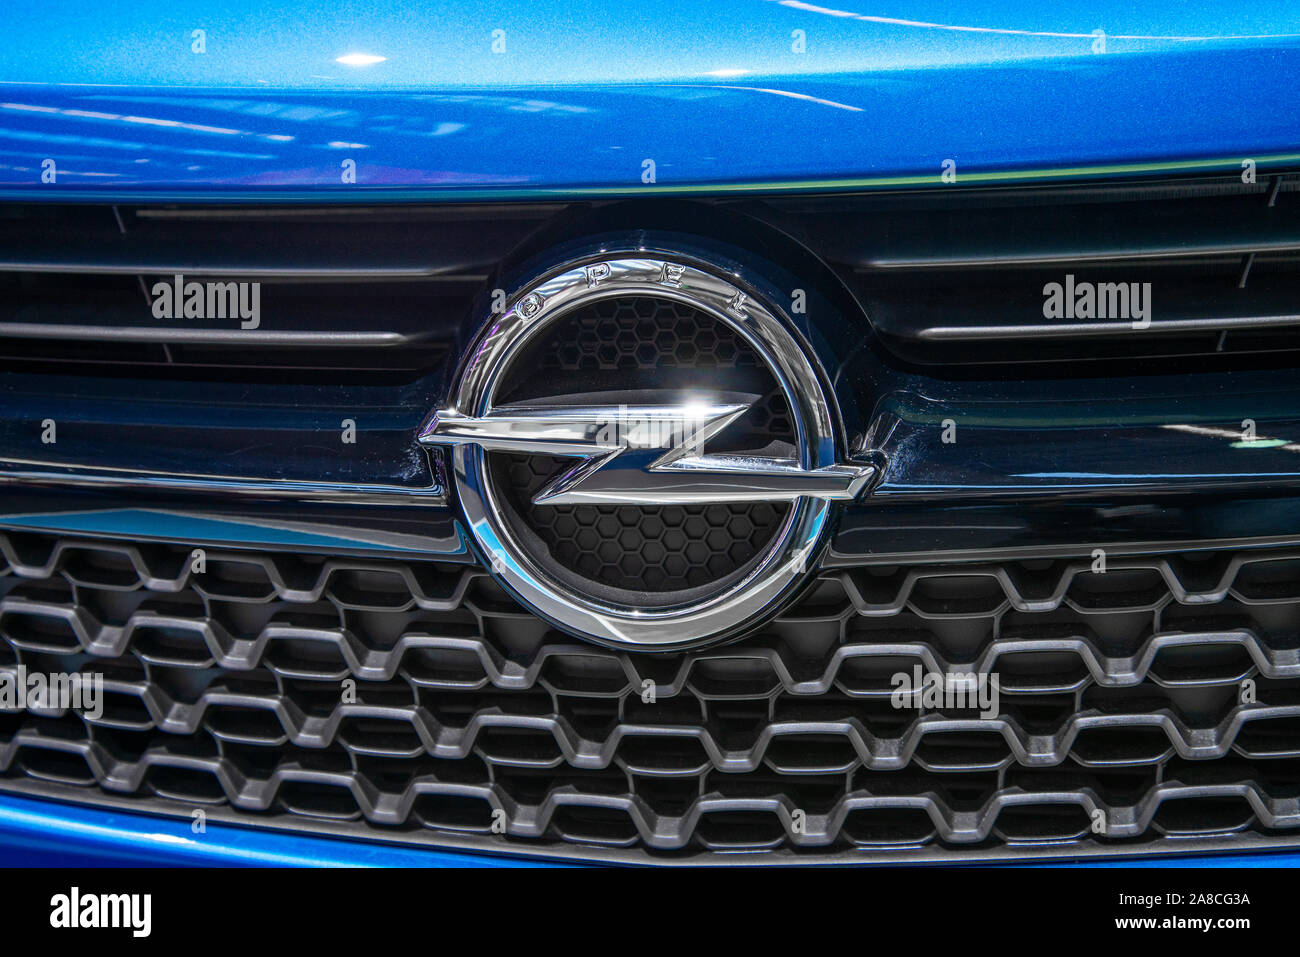 Le logo d'Opel sur une voiture bleue de cette marque Banque D'Images